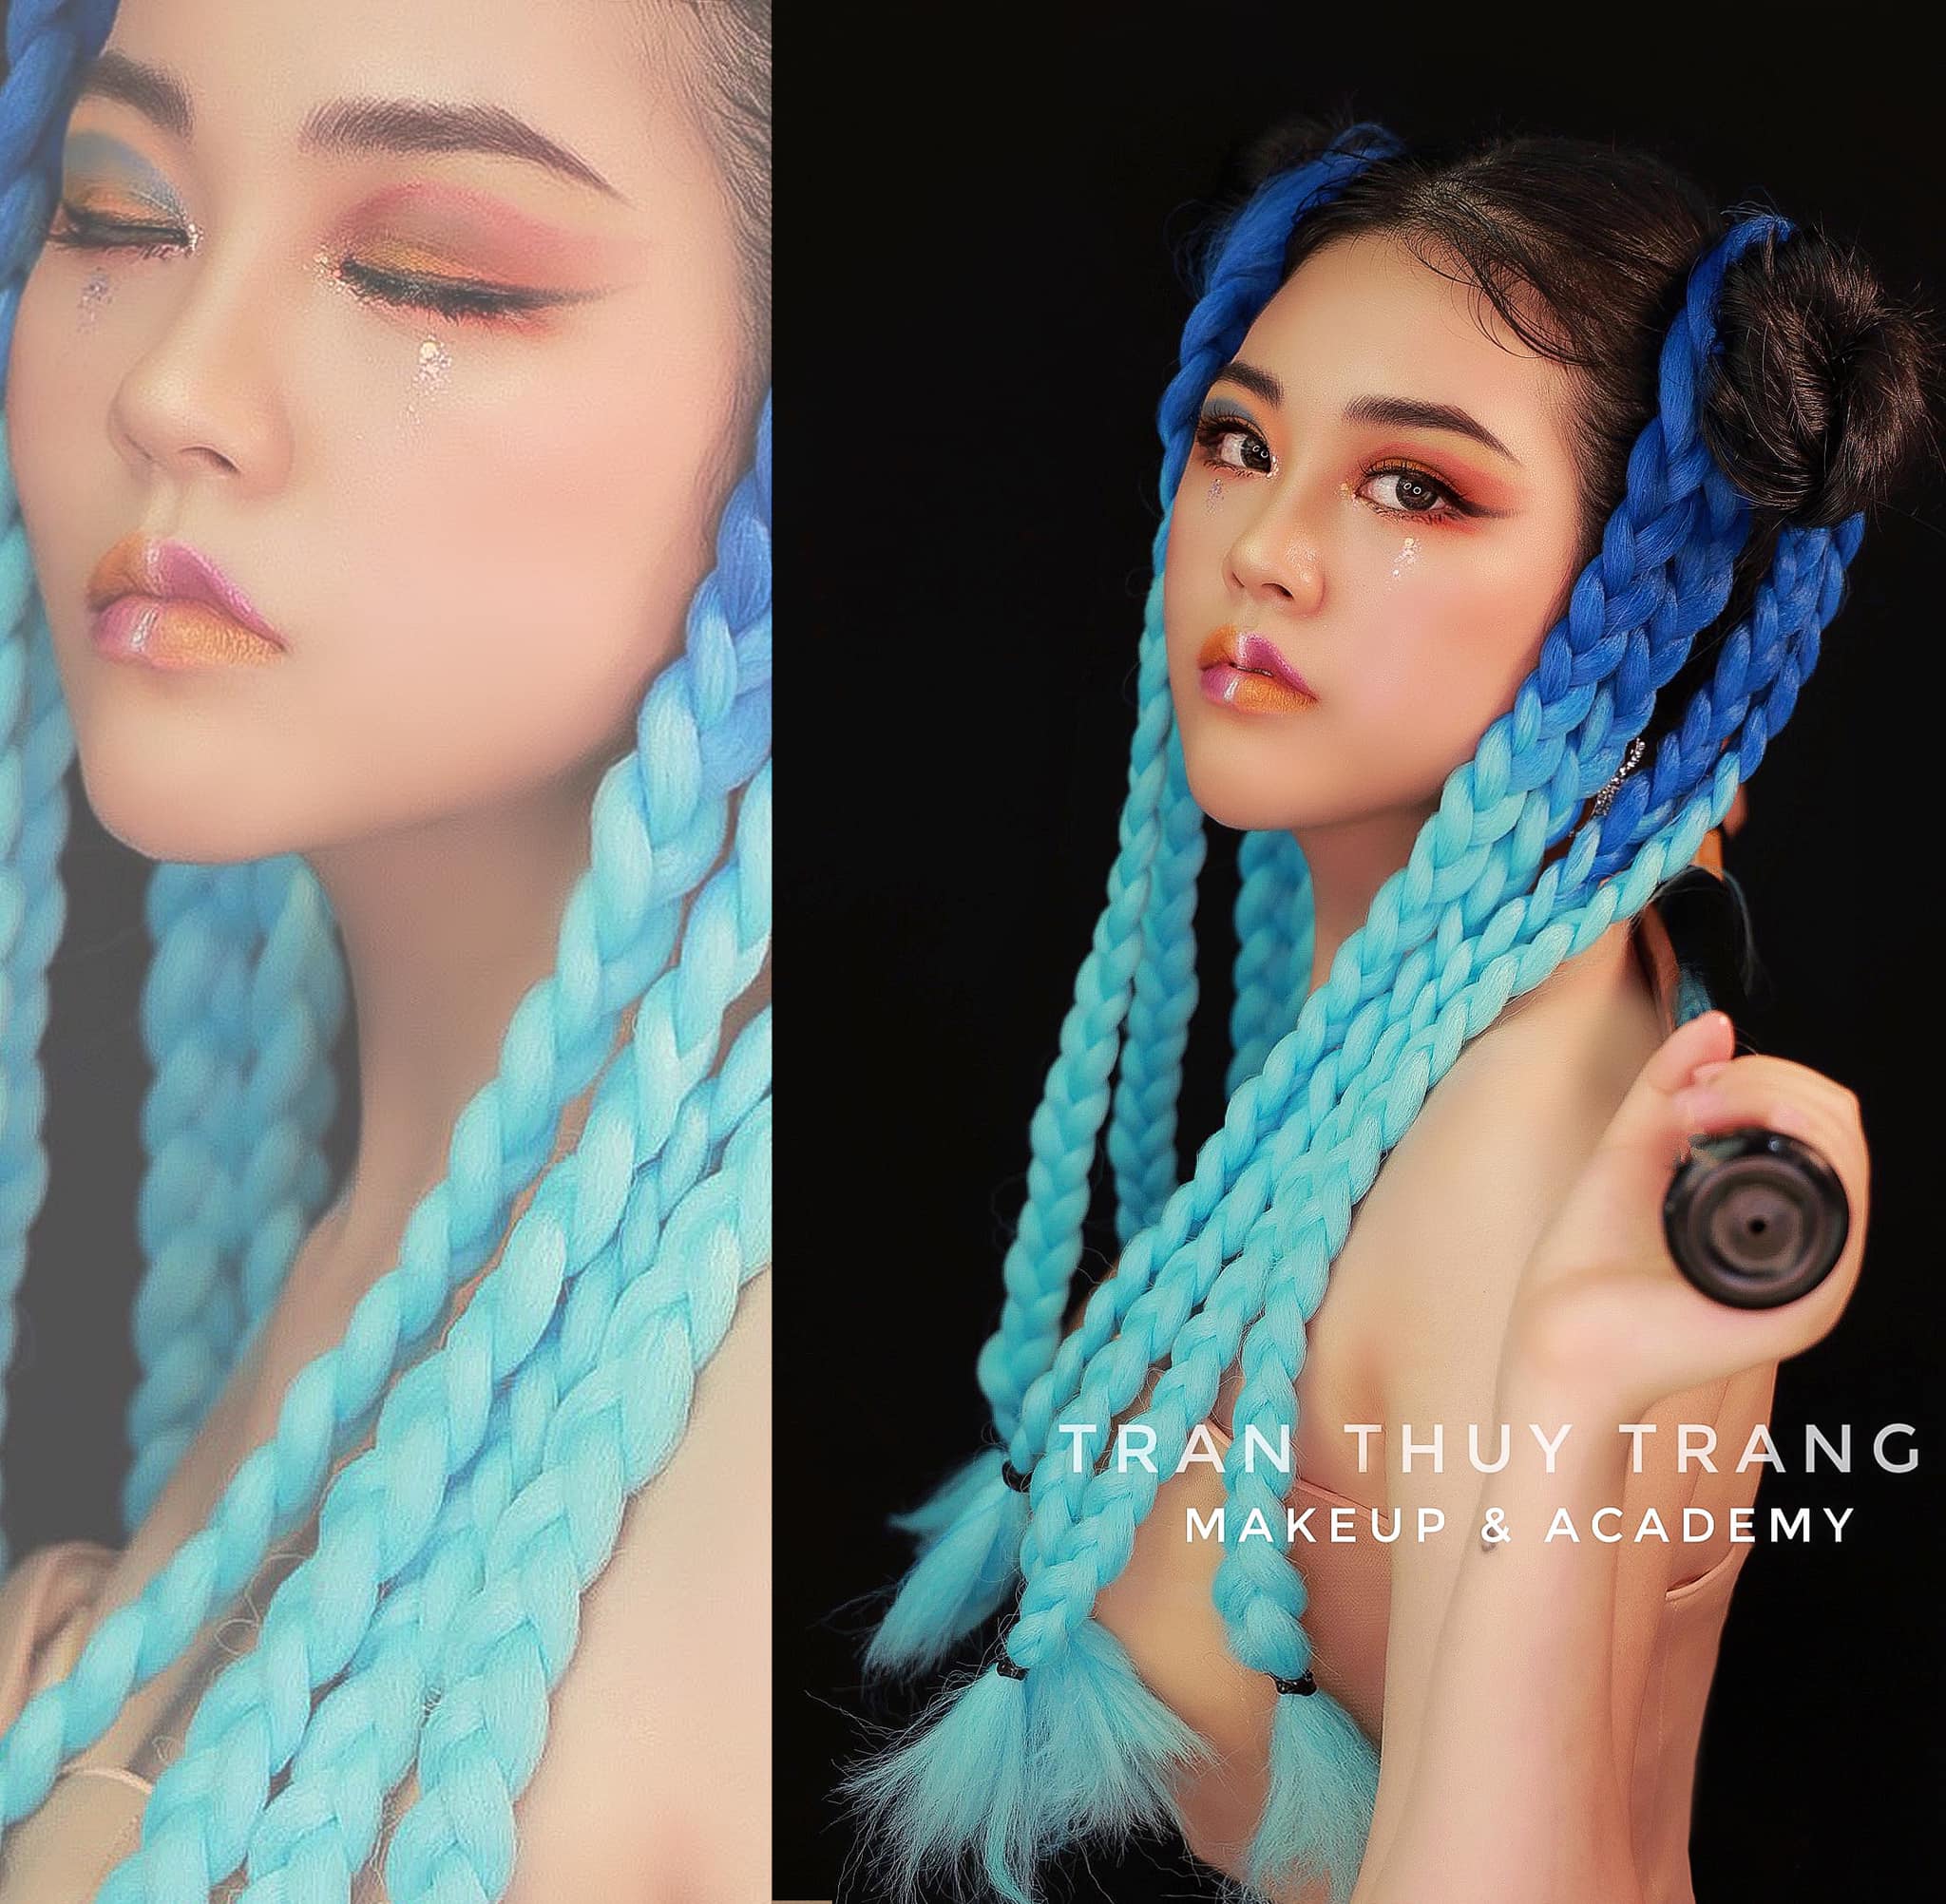 Trần Thùy Trang Makeup & Academy (Đình Phong Studio) ảnh 2